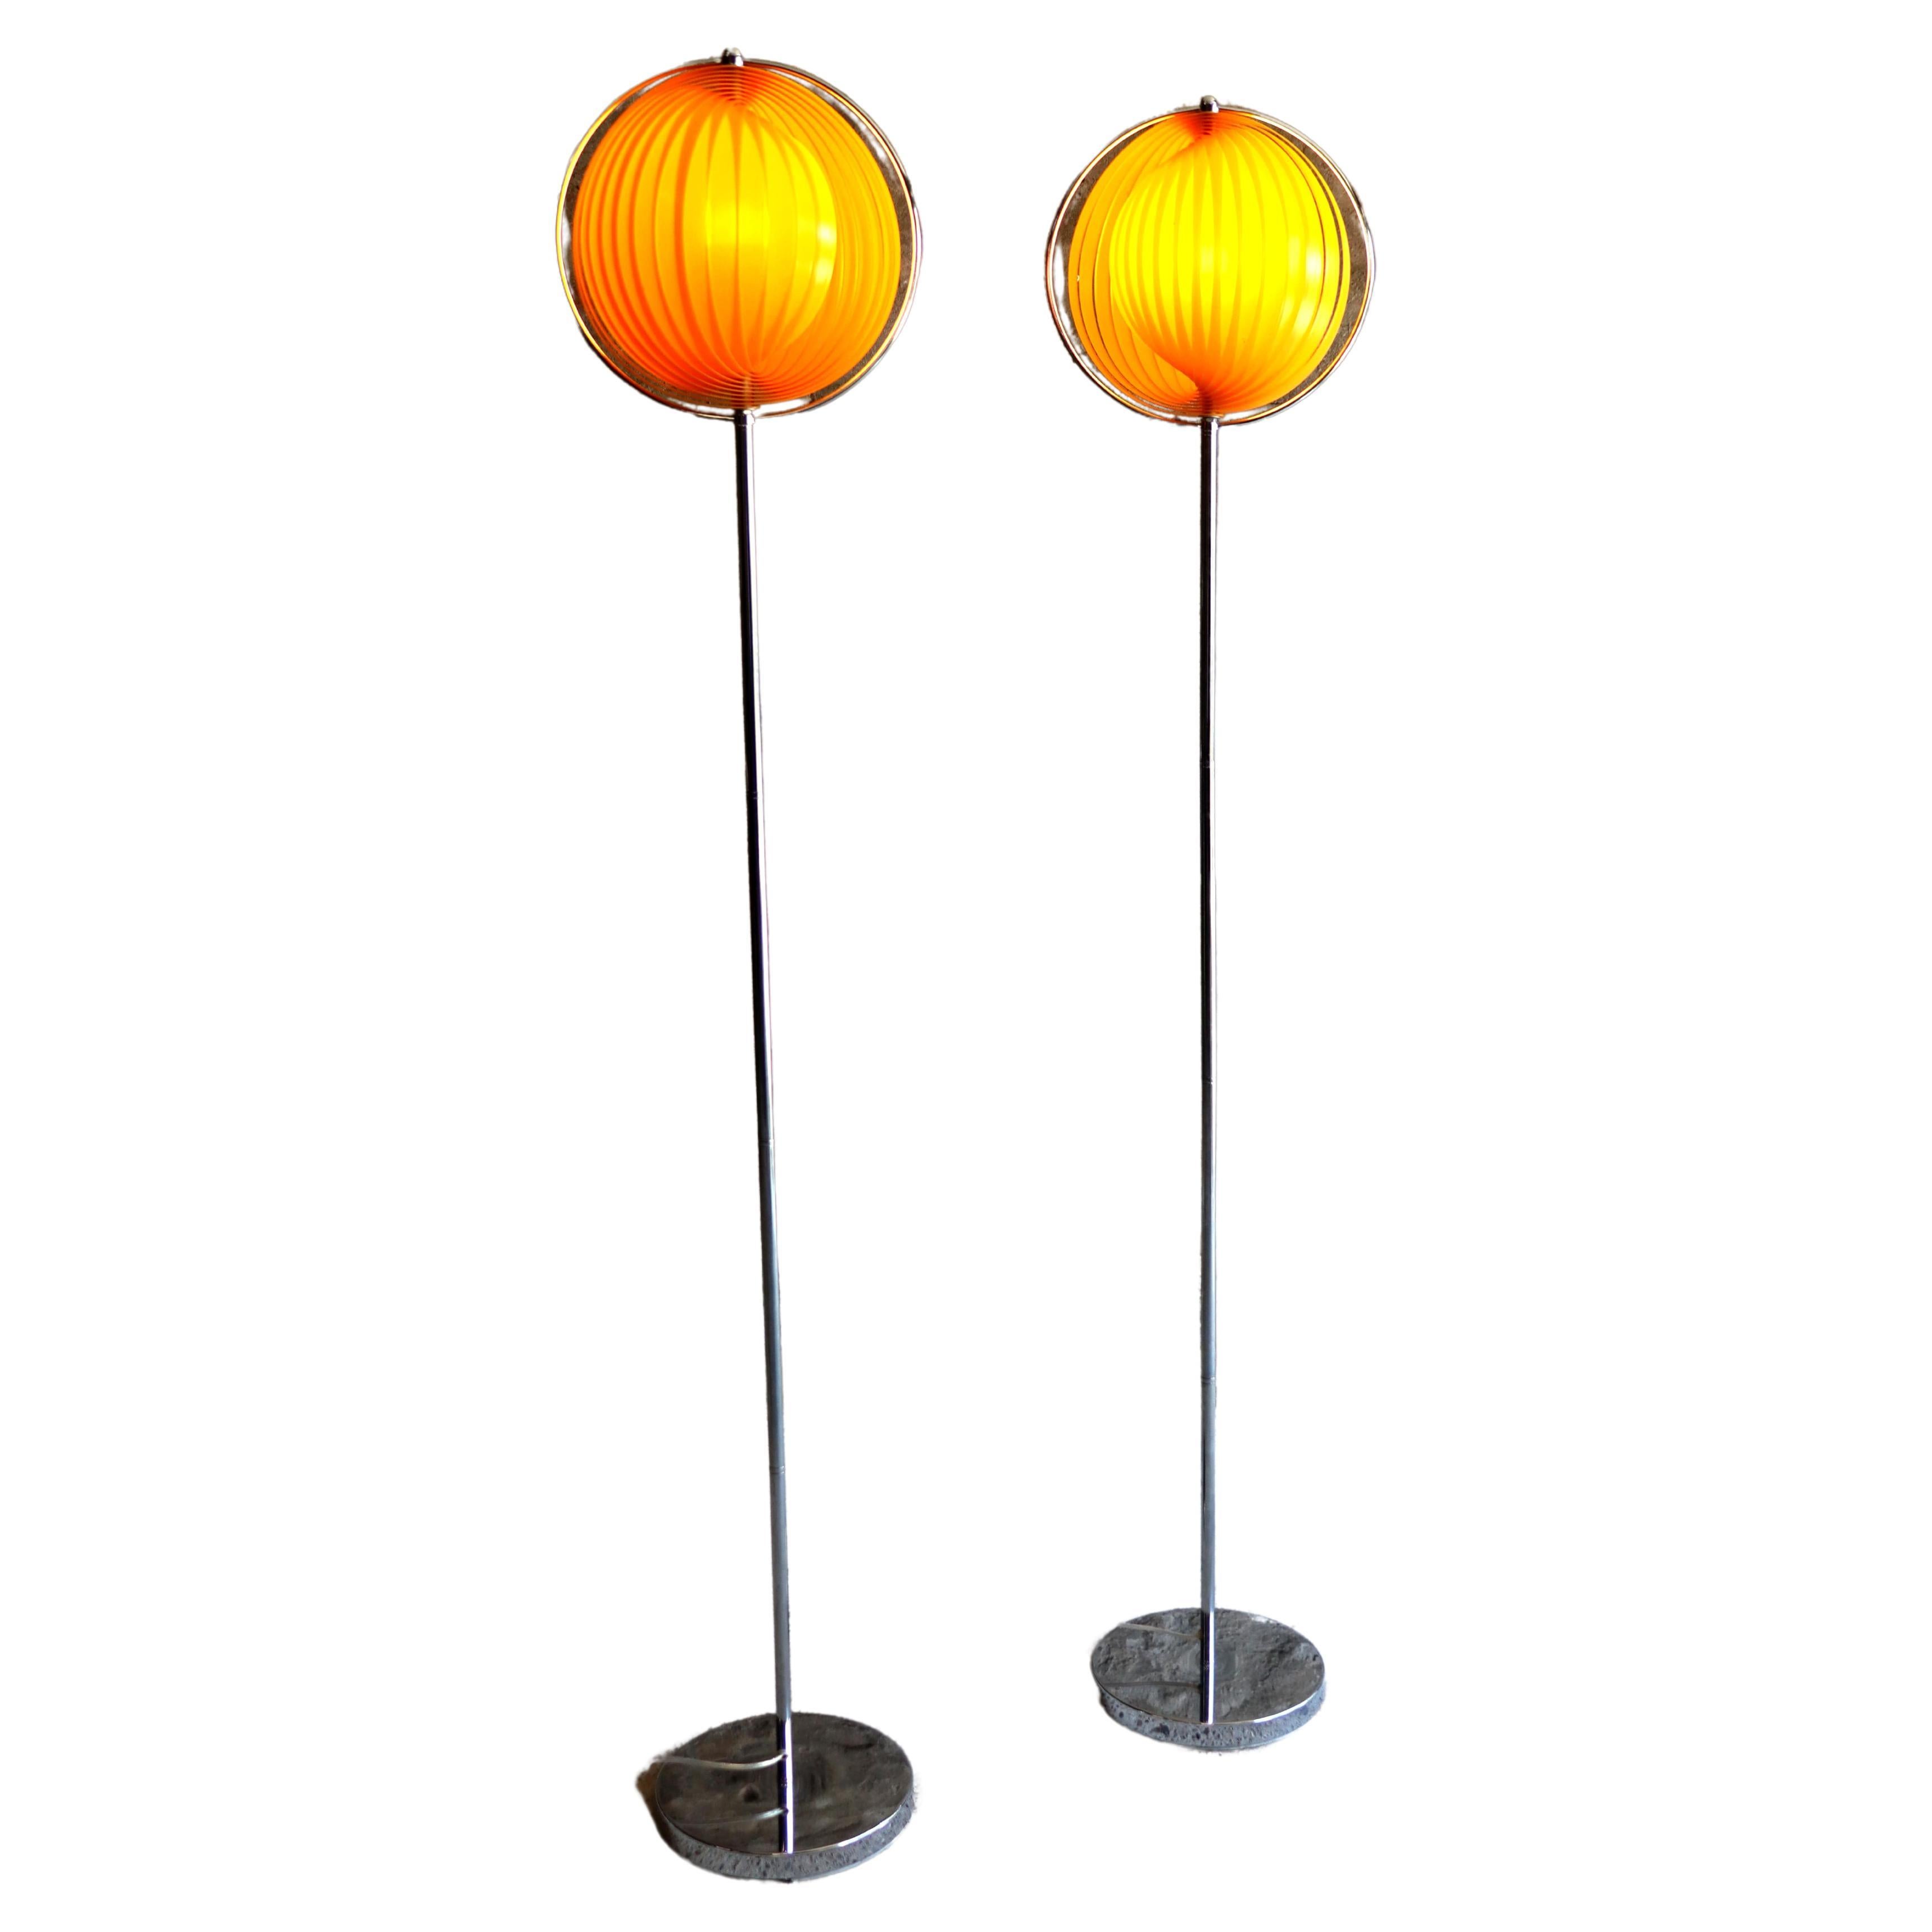 Kare Design - Mondlampe - Orange - Eclipse - Stehlampe - 1980er